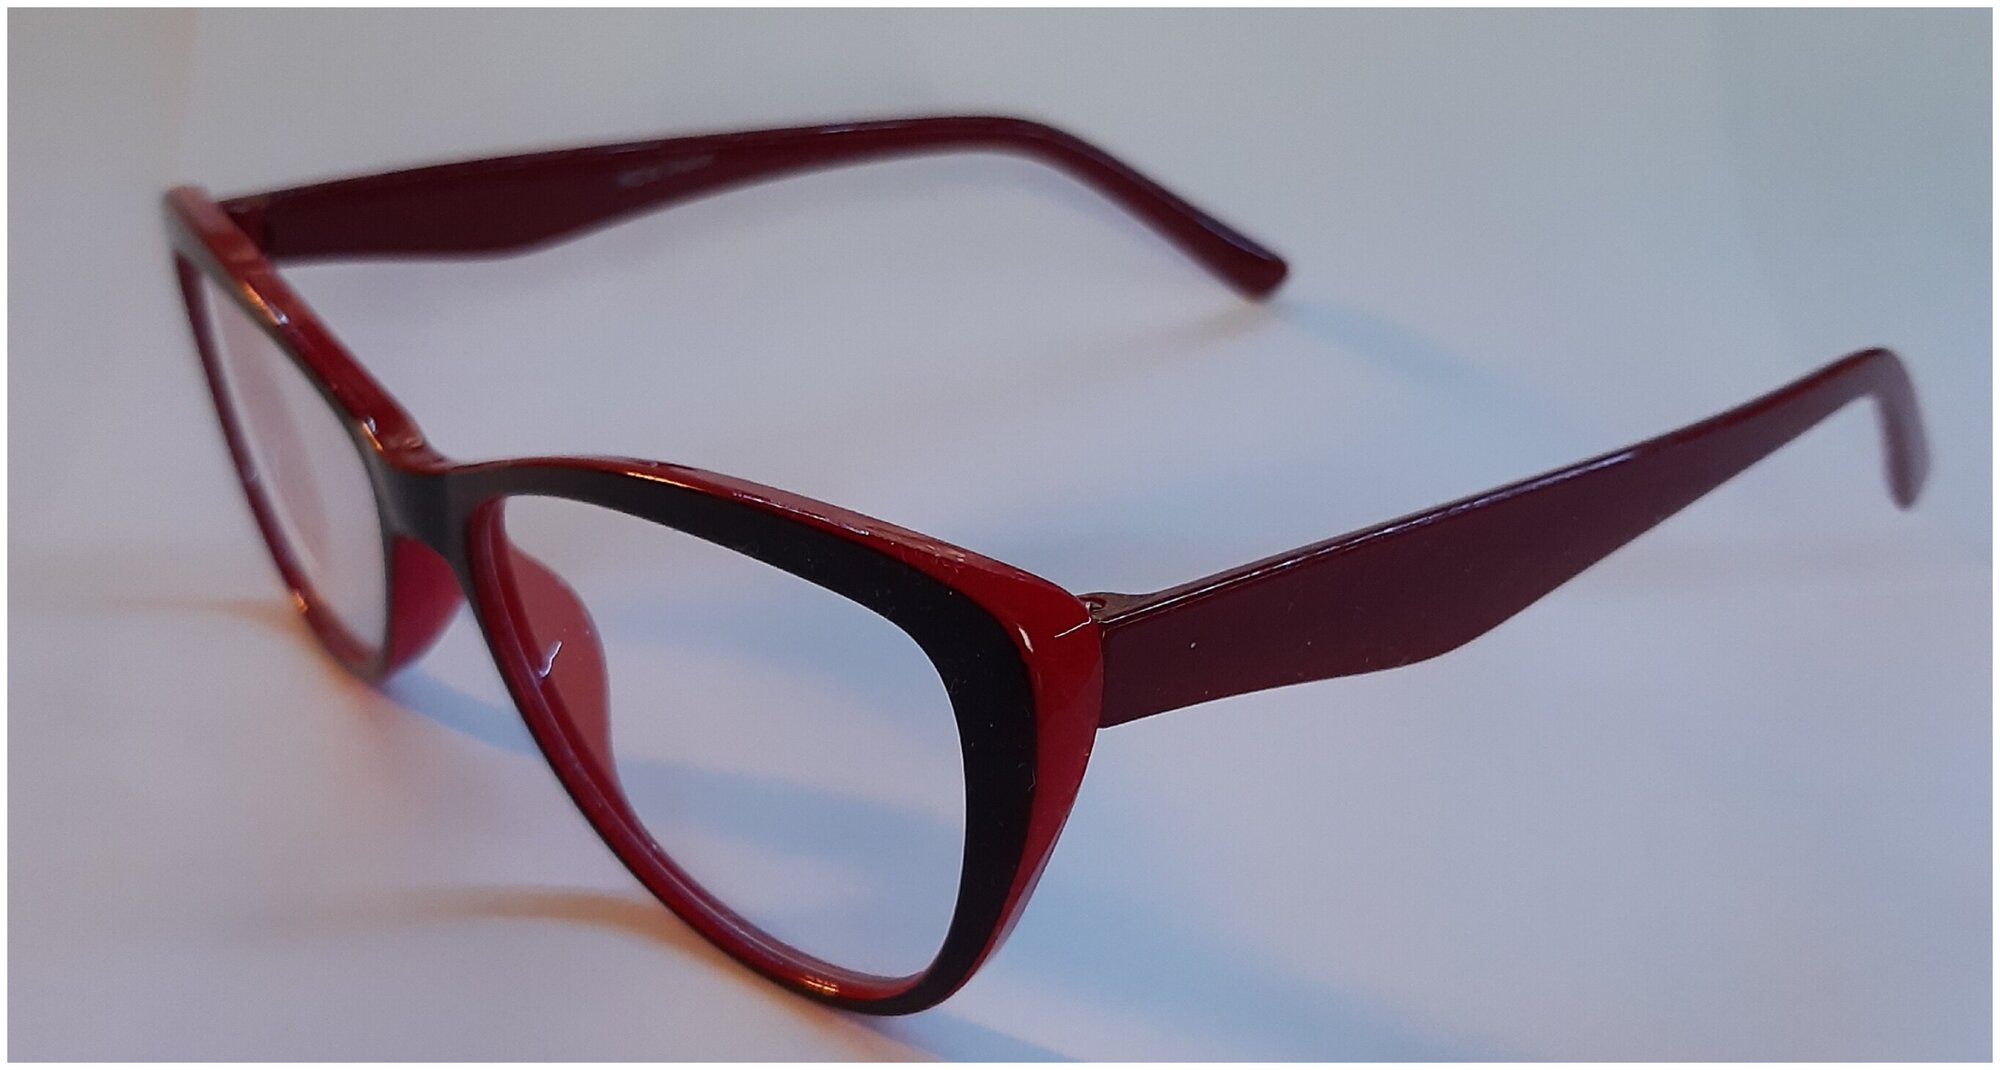 Готовые очки для зрения с диоптриями+2,5. Очки для дали мужские, женские. Очки для чтения. Очки на плюс и минус.